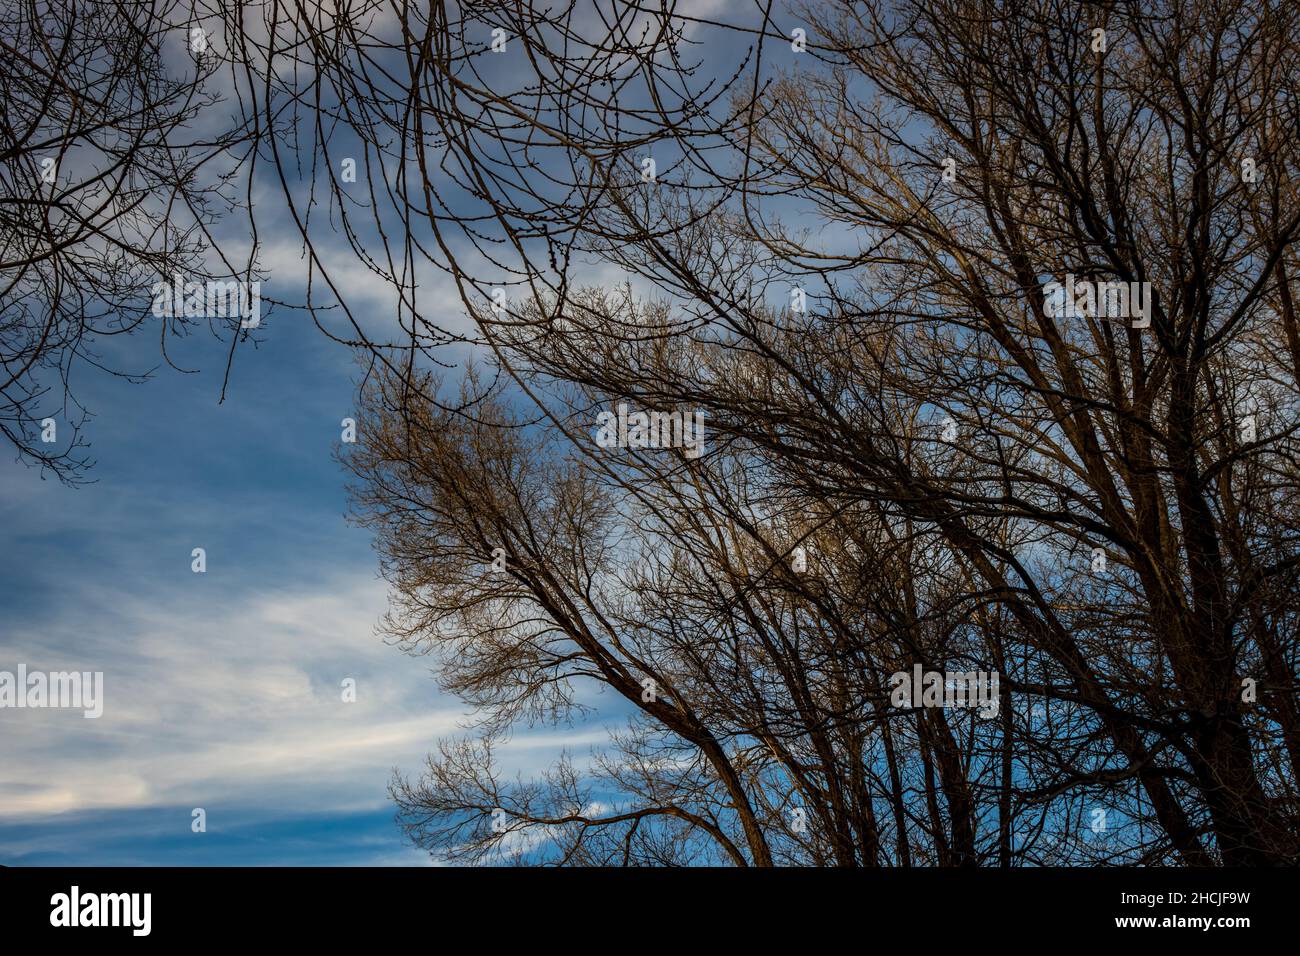 Alberi con foglie giallastre contro un cielo blu e poco nuvoloso Foto Stock